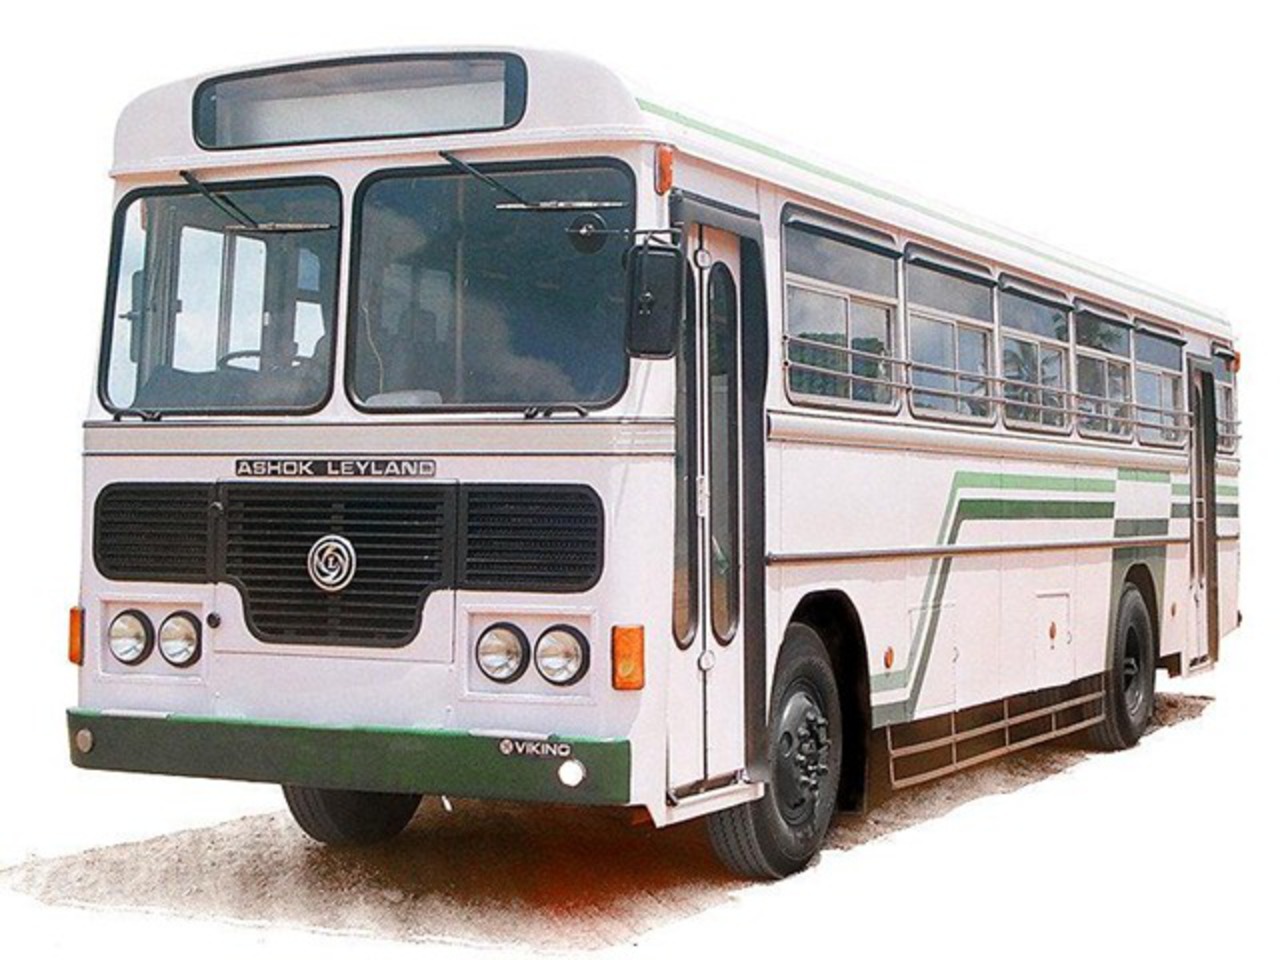 Buses | Welcome to Lanka Ashok Leyland